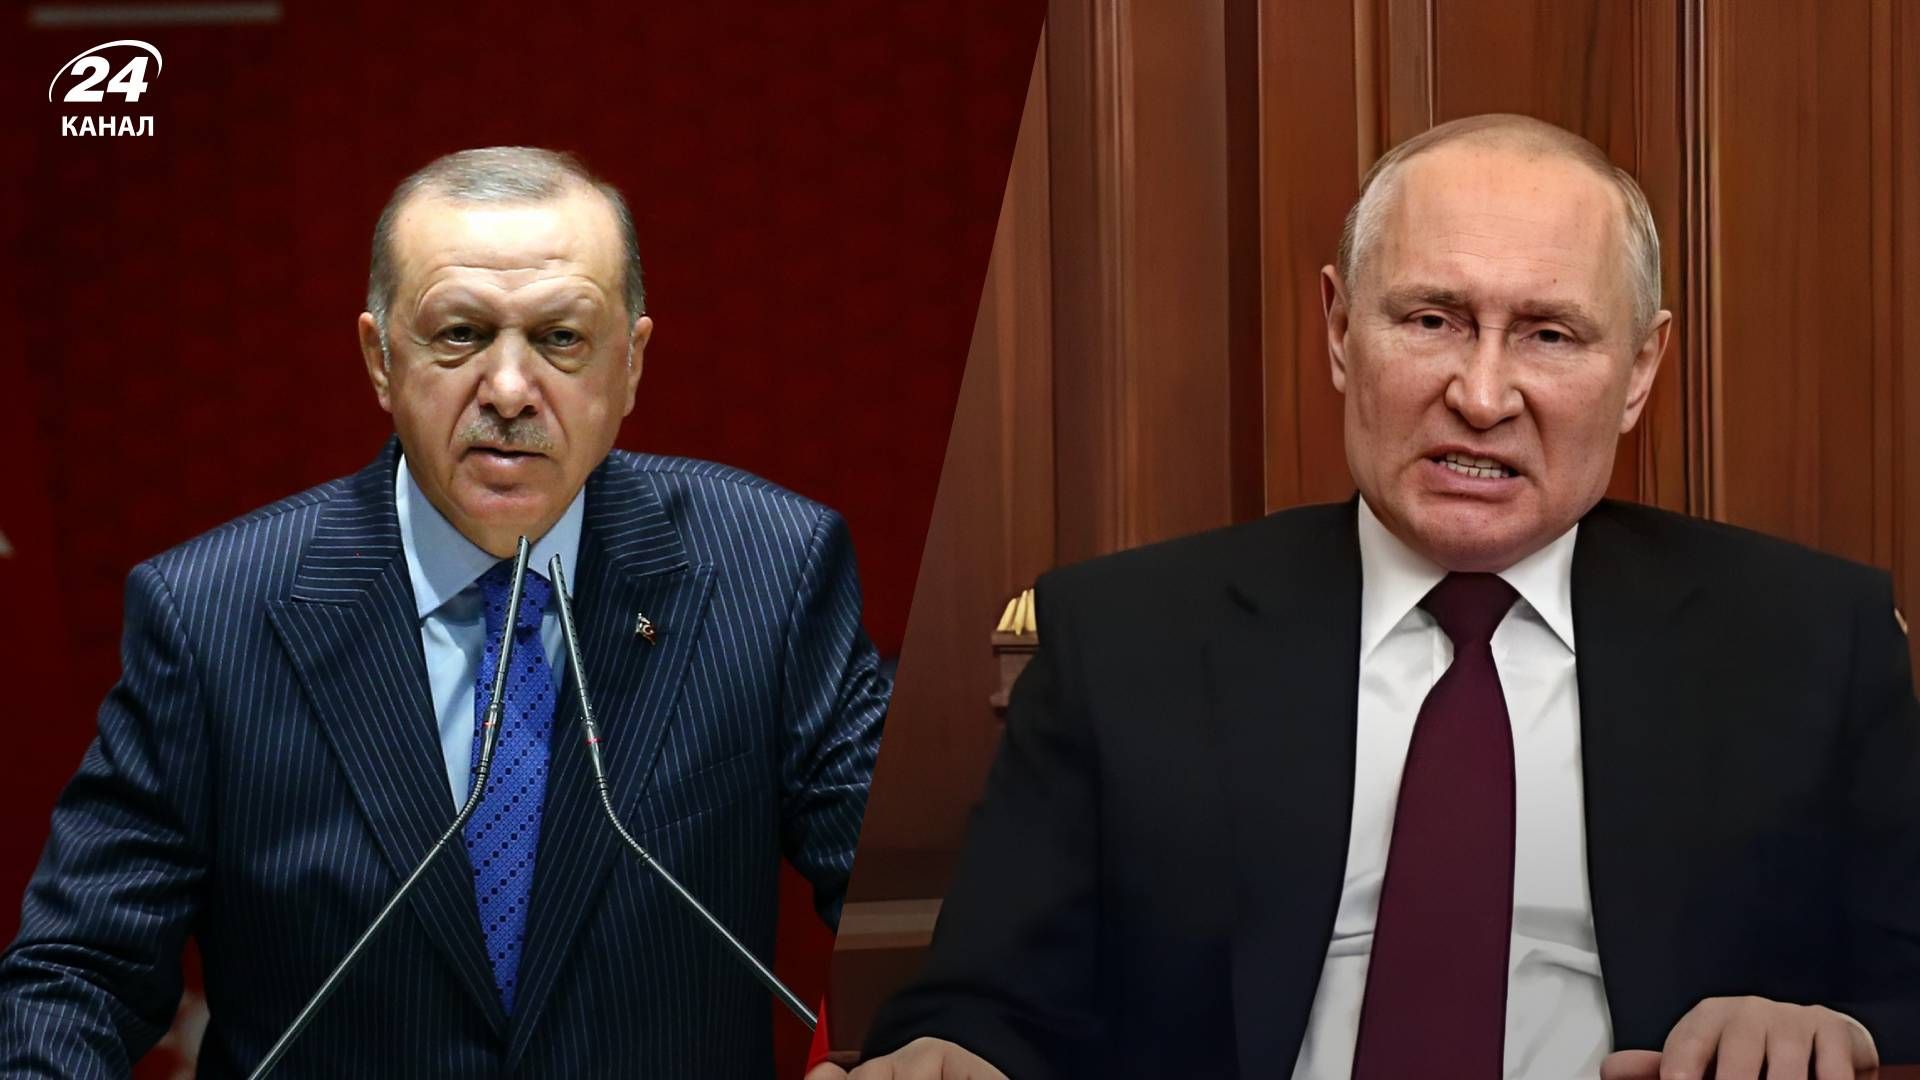 Готовы заложить основу для соглашения о прекращении огня, – Эрдоган во время разговора с Путиным - 24 Канал